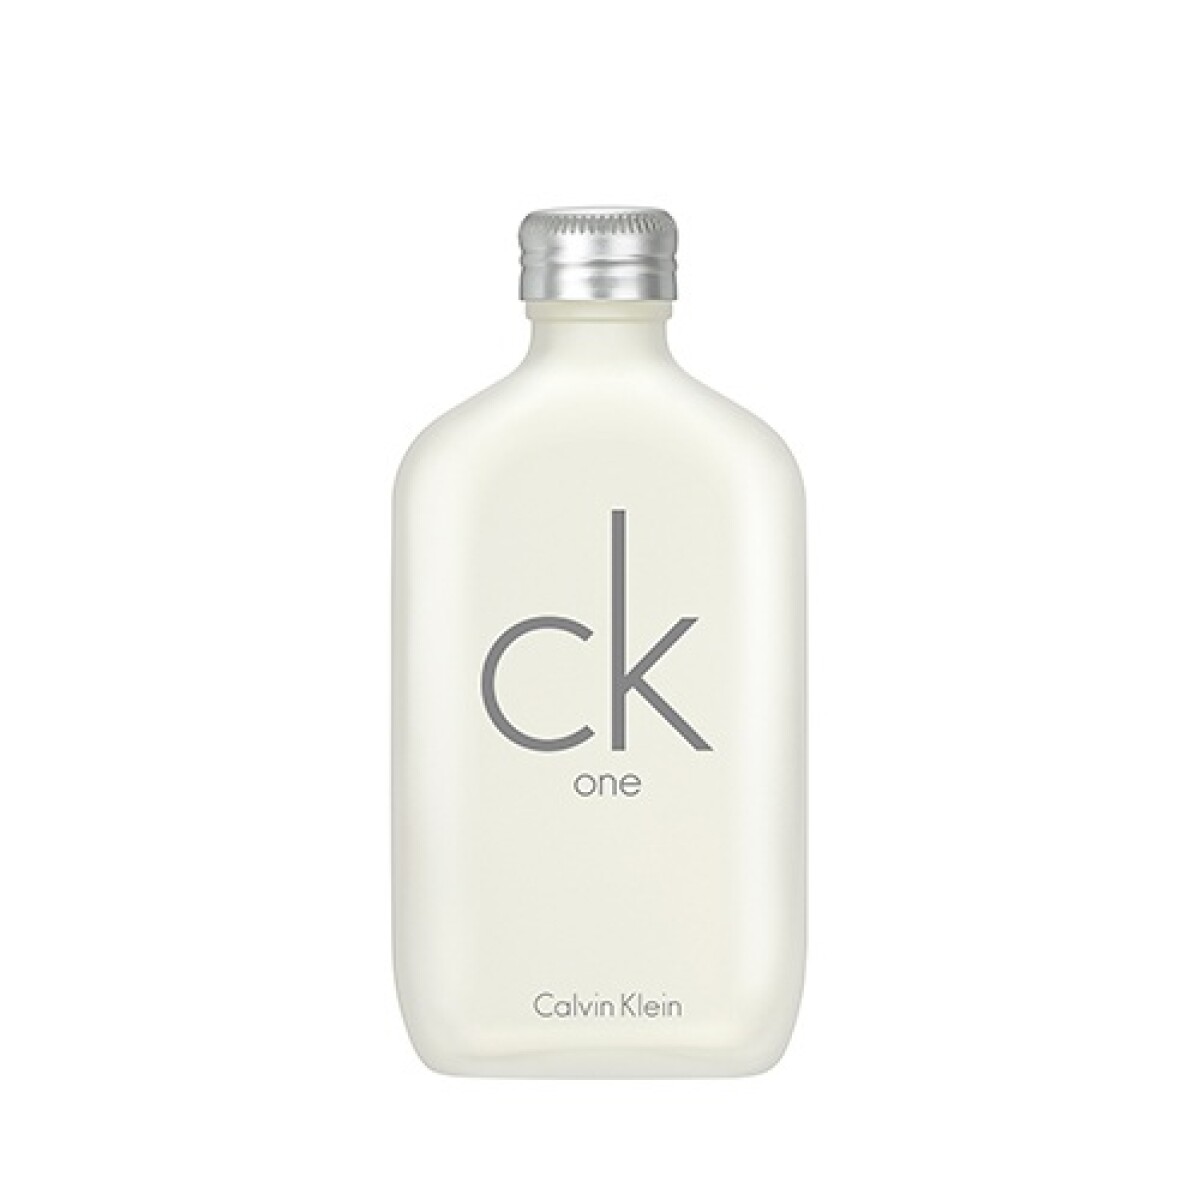 Calvin Klein CK ONE EDT 100 ml 